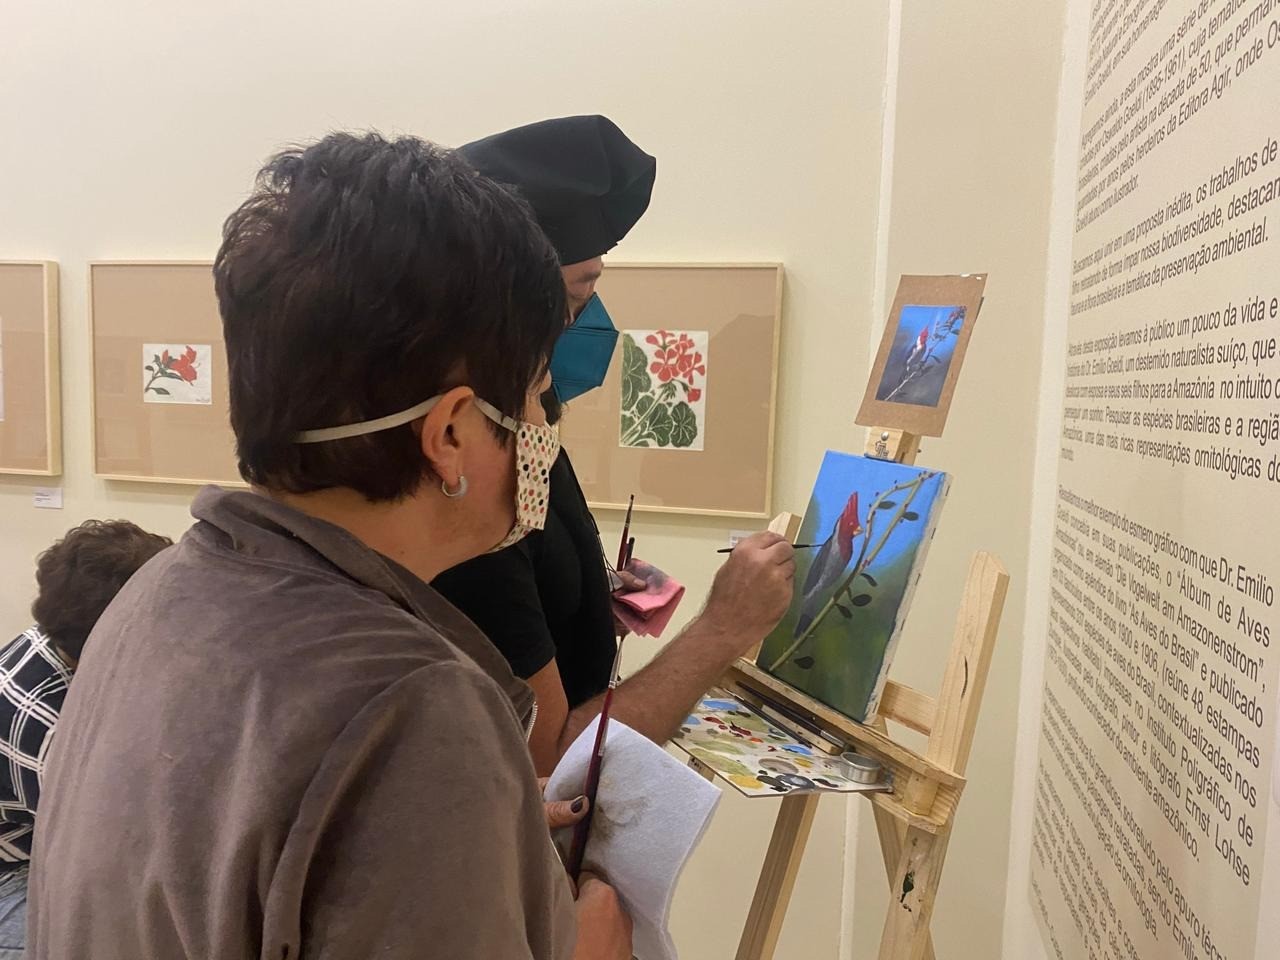 O artista Márcio Carneiro (de gorro preto) durante o workshop de pintura que ministrou em 3 de Julho no espaço da exposição ‘Fauna e Flora Brasileira’, no Via Vale Garden Shopping. Foto: Divulgação.